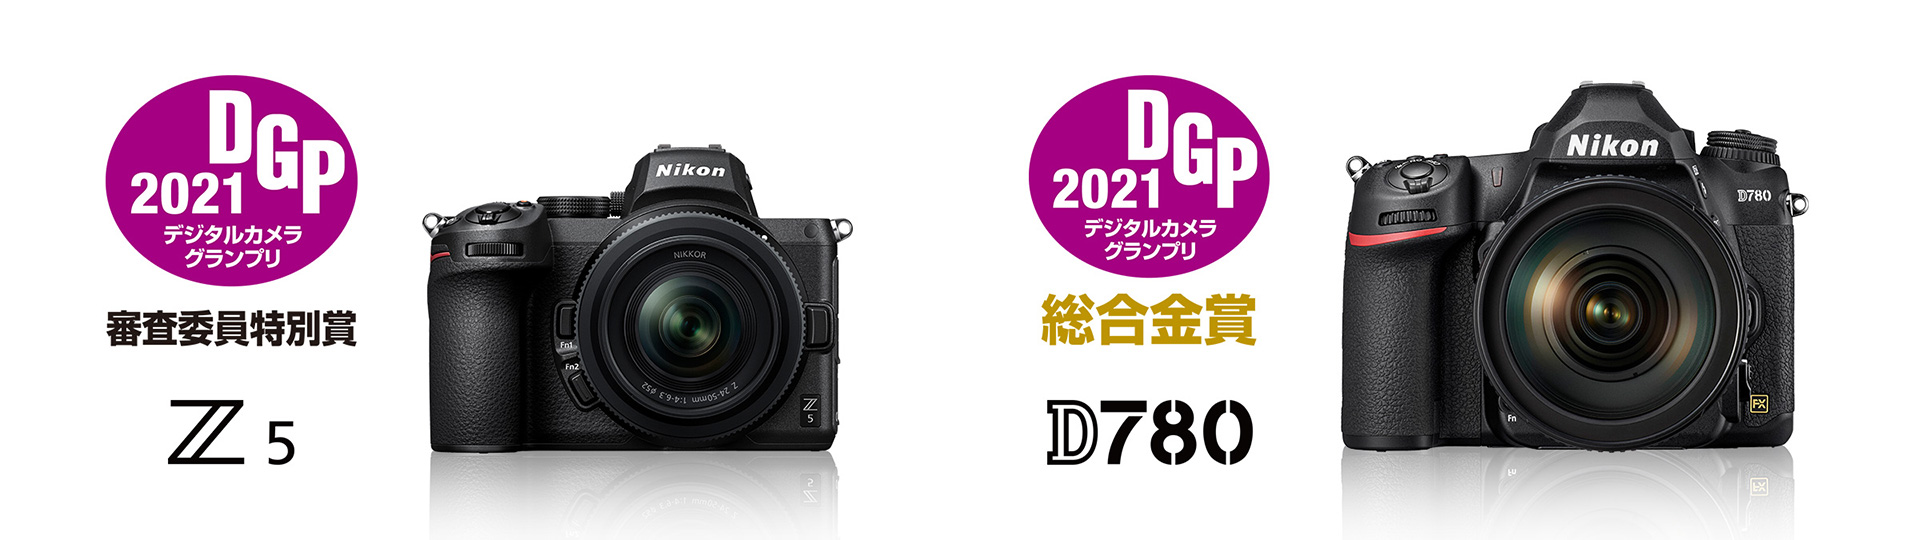 デジタルカメラグランプリ2021」でミラーレスカメラ「Z 5」が「審査 